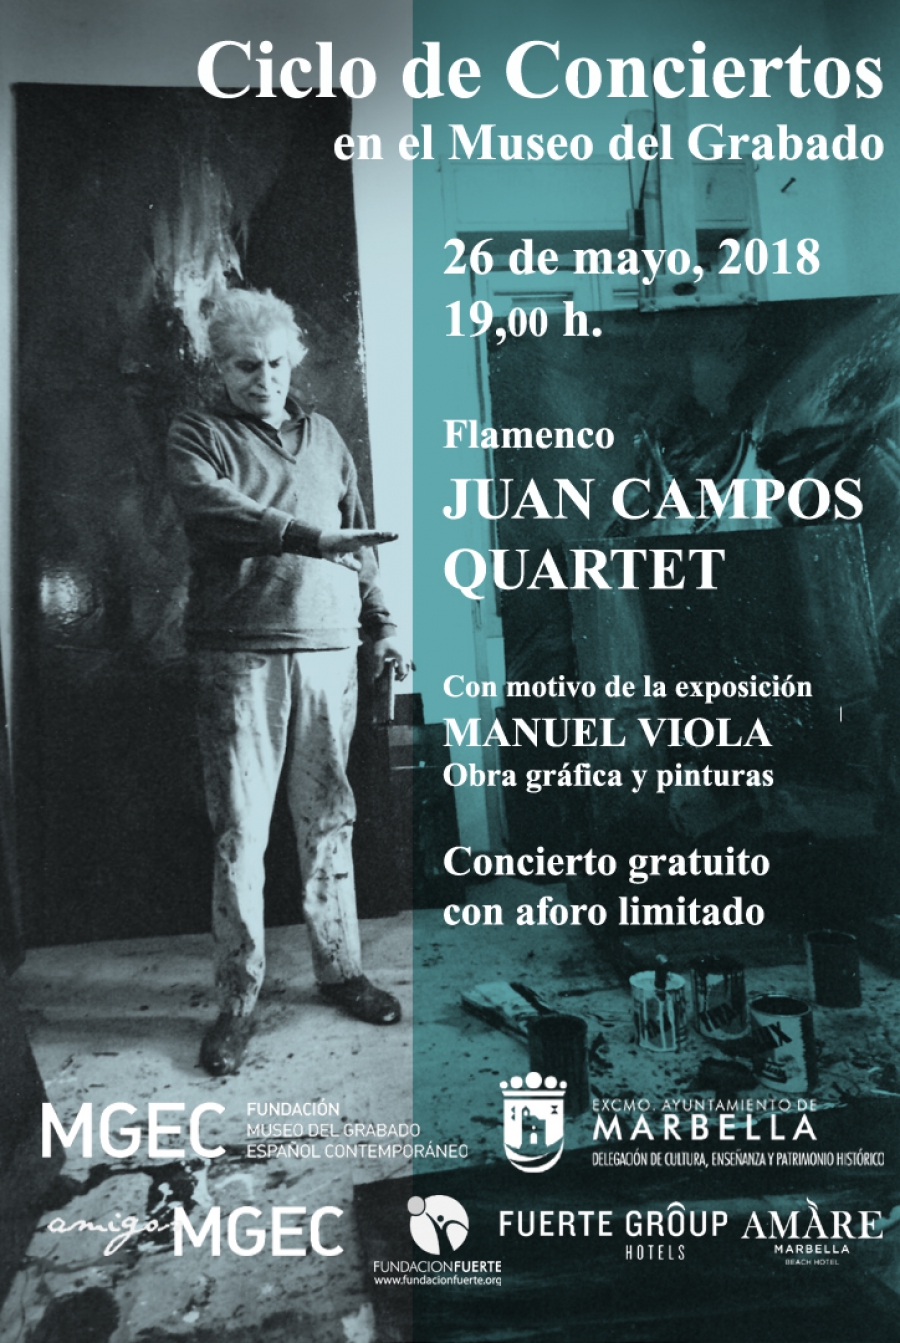 El Museo del Grabado acoge este sábado el concierto de Juan Campos Quartet